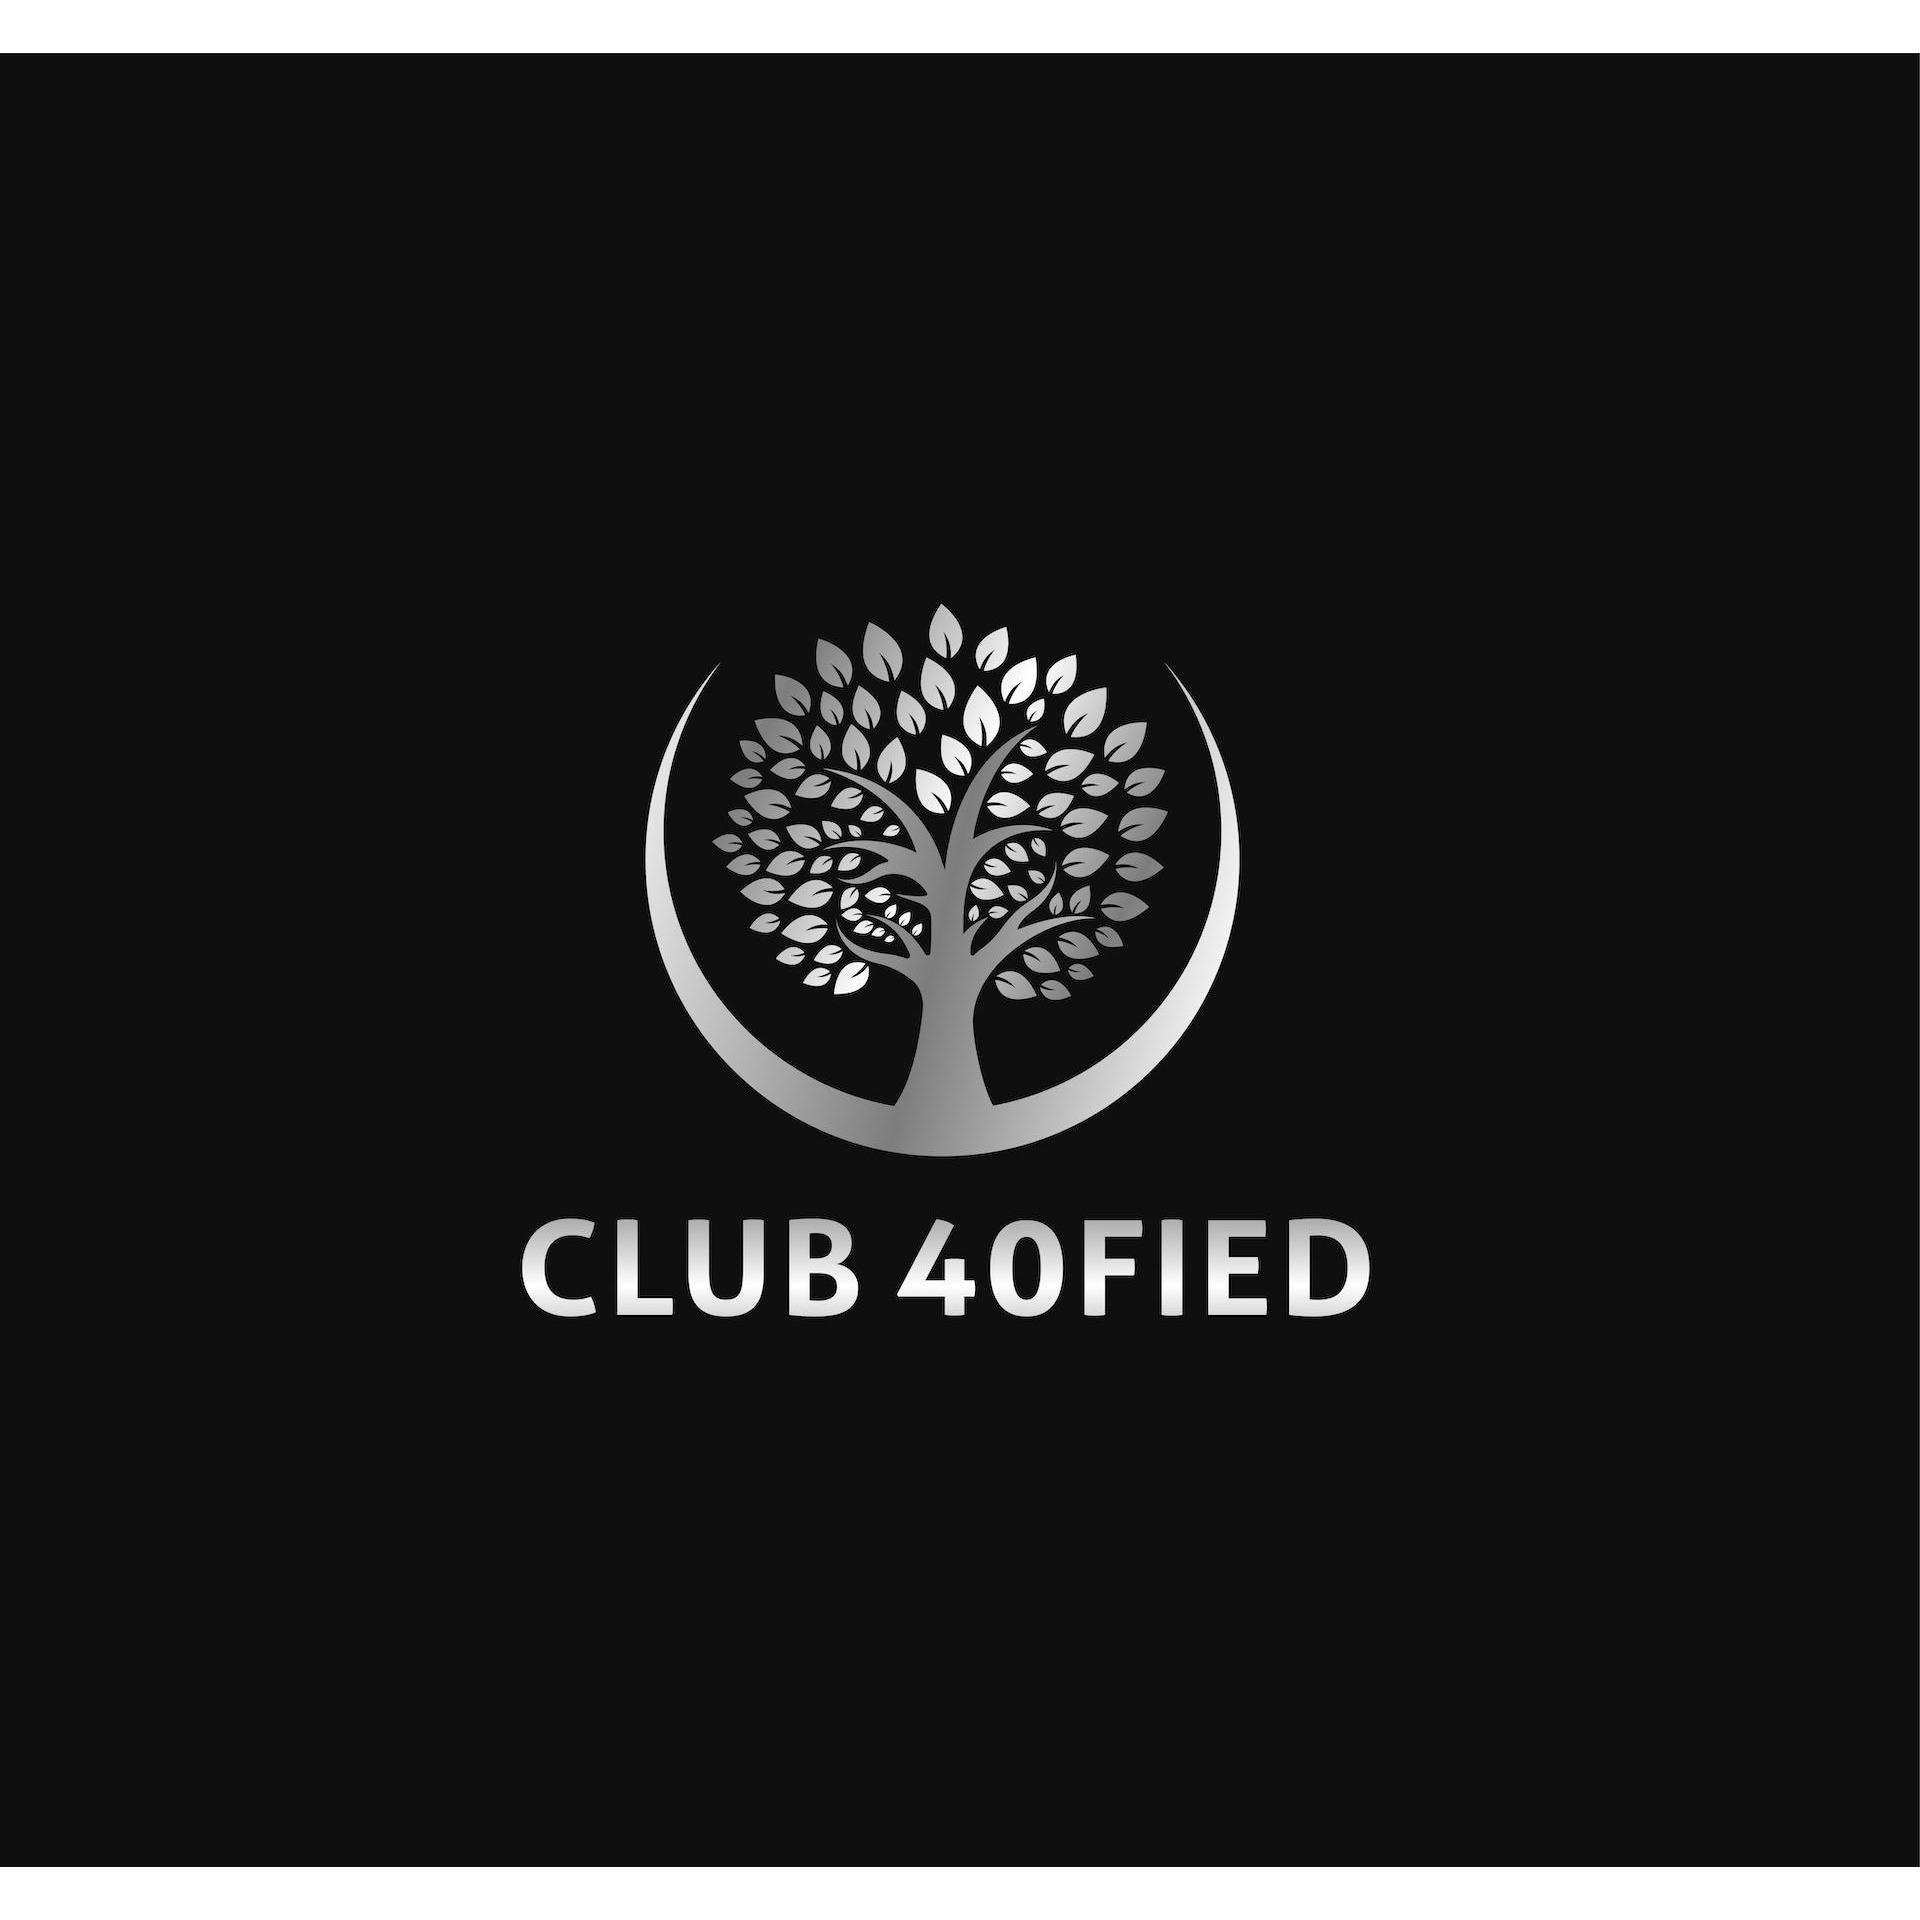 Club 40FIED Arundel Club 40fied Arundel (07) 4803 8094